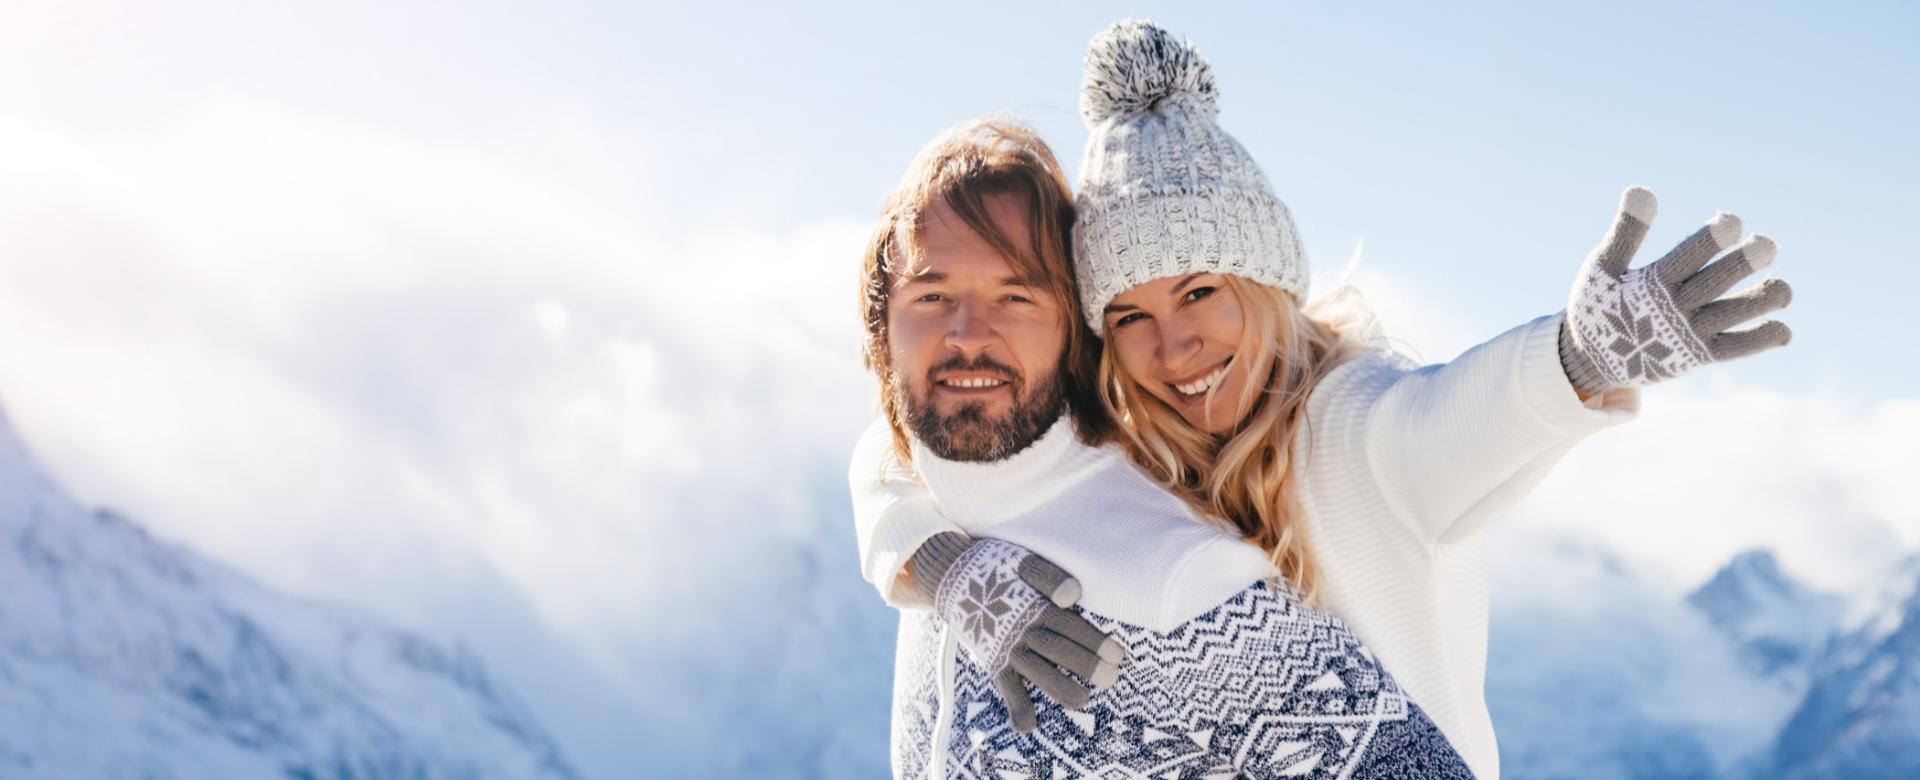 Glückliches Paar in den Bergen mit Winterkleidung, blauer Himmel und Schnee.